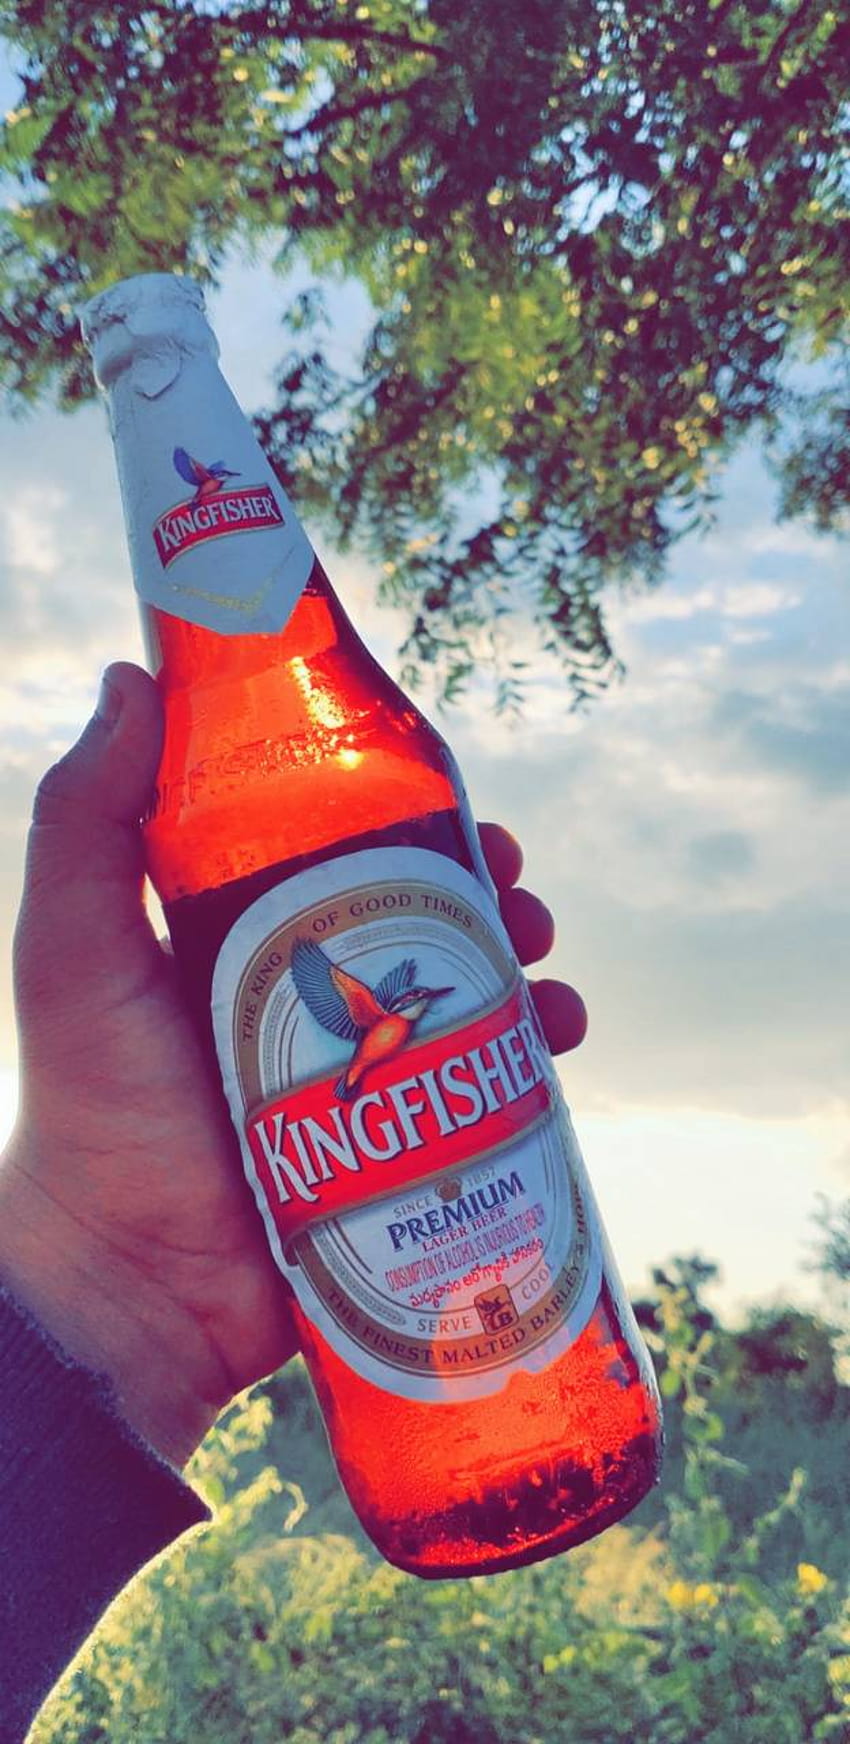 Kingfisher beer HD wallpapers | Pxfuel